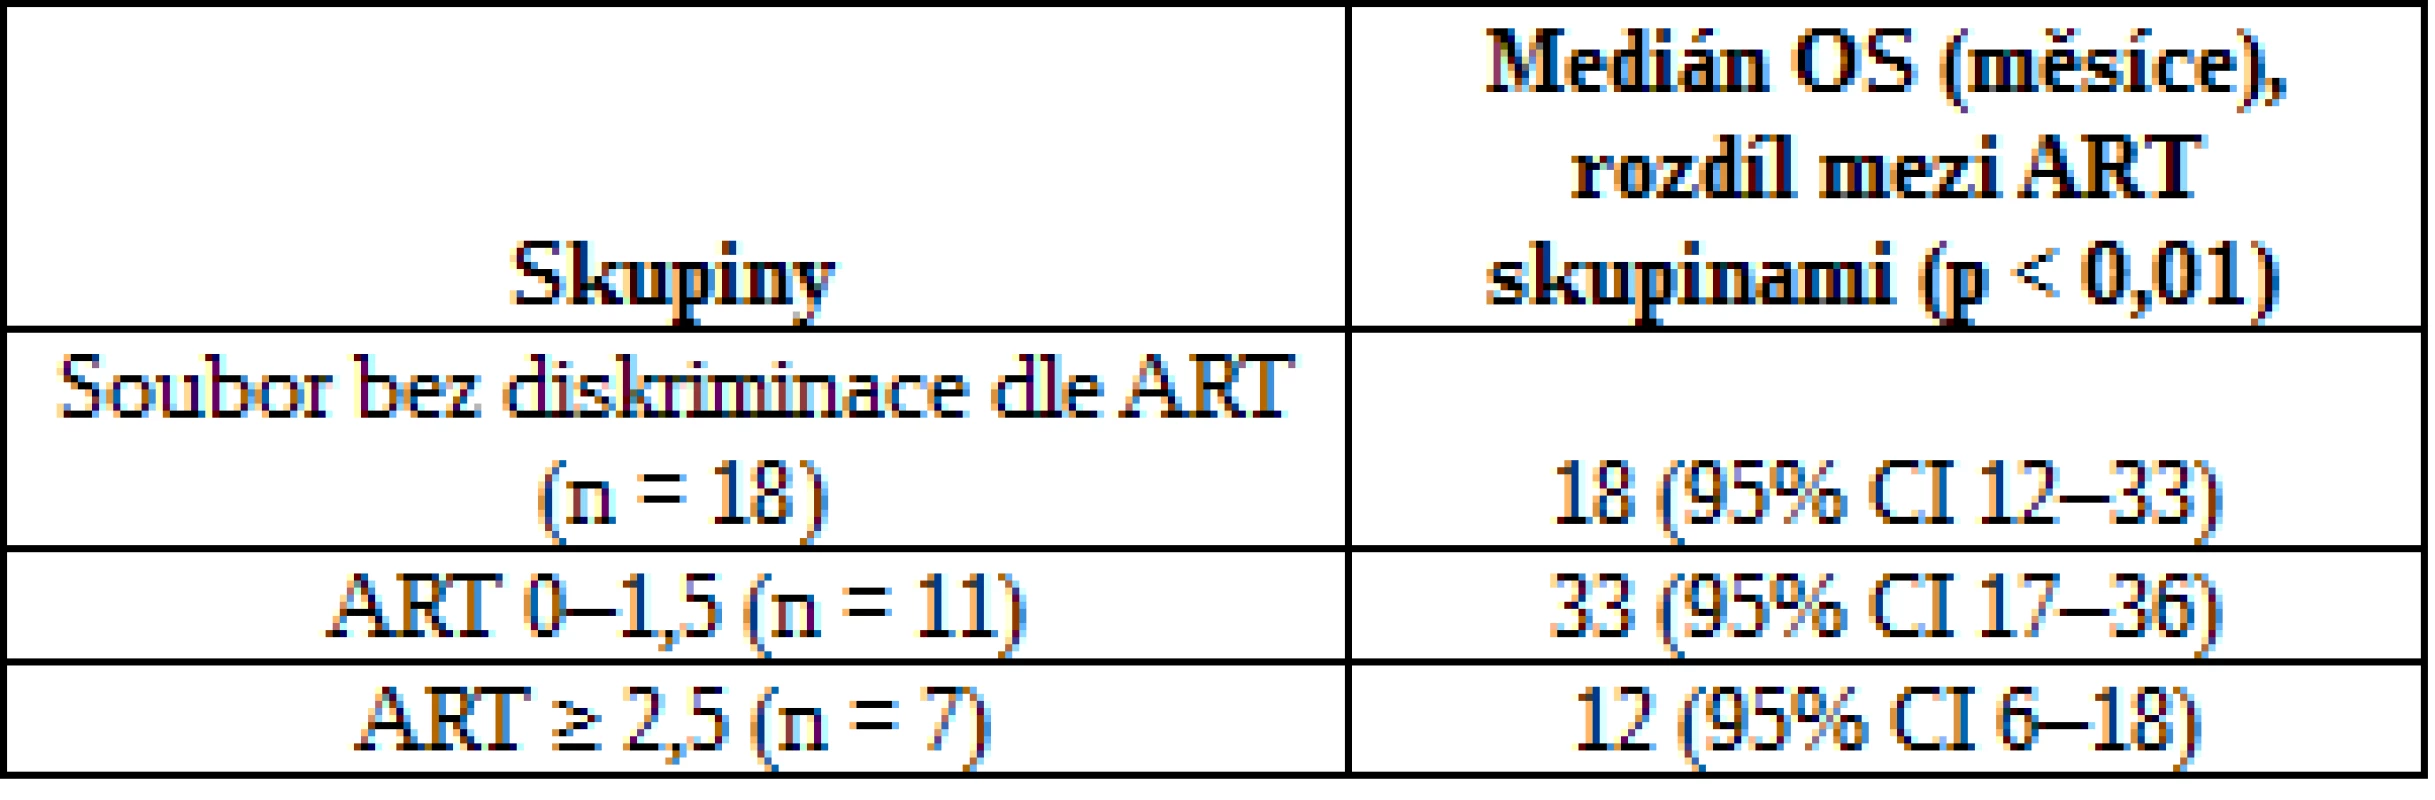 Výsledky OS dle ART skóre v souboru Hříbek et al.